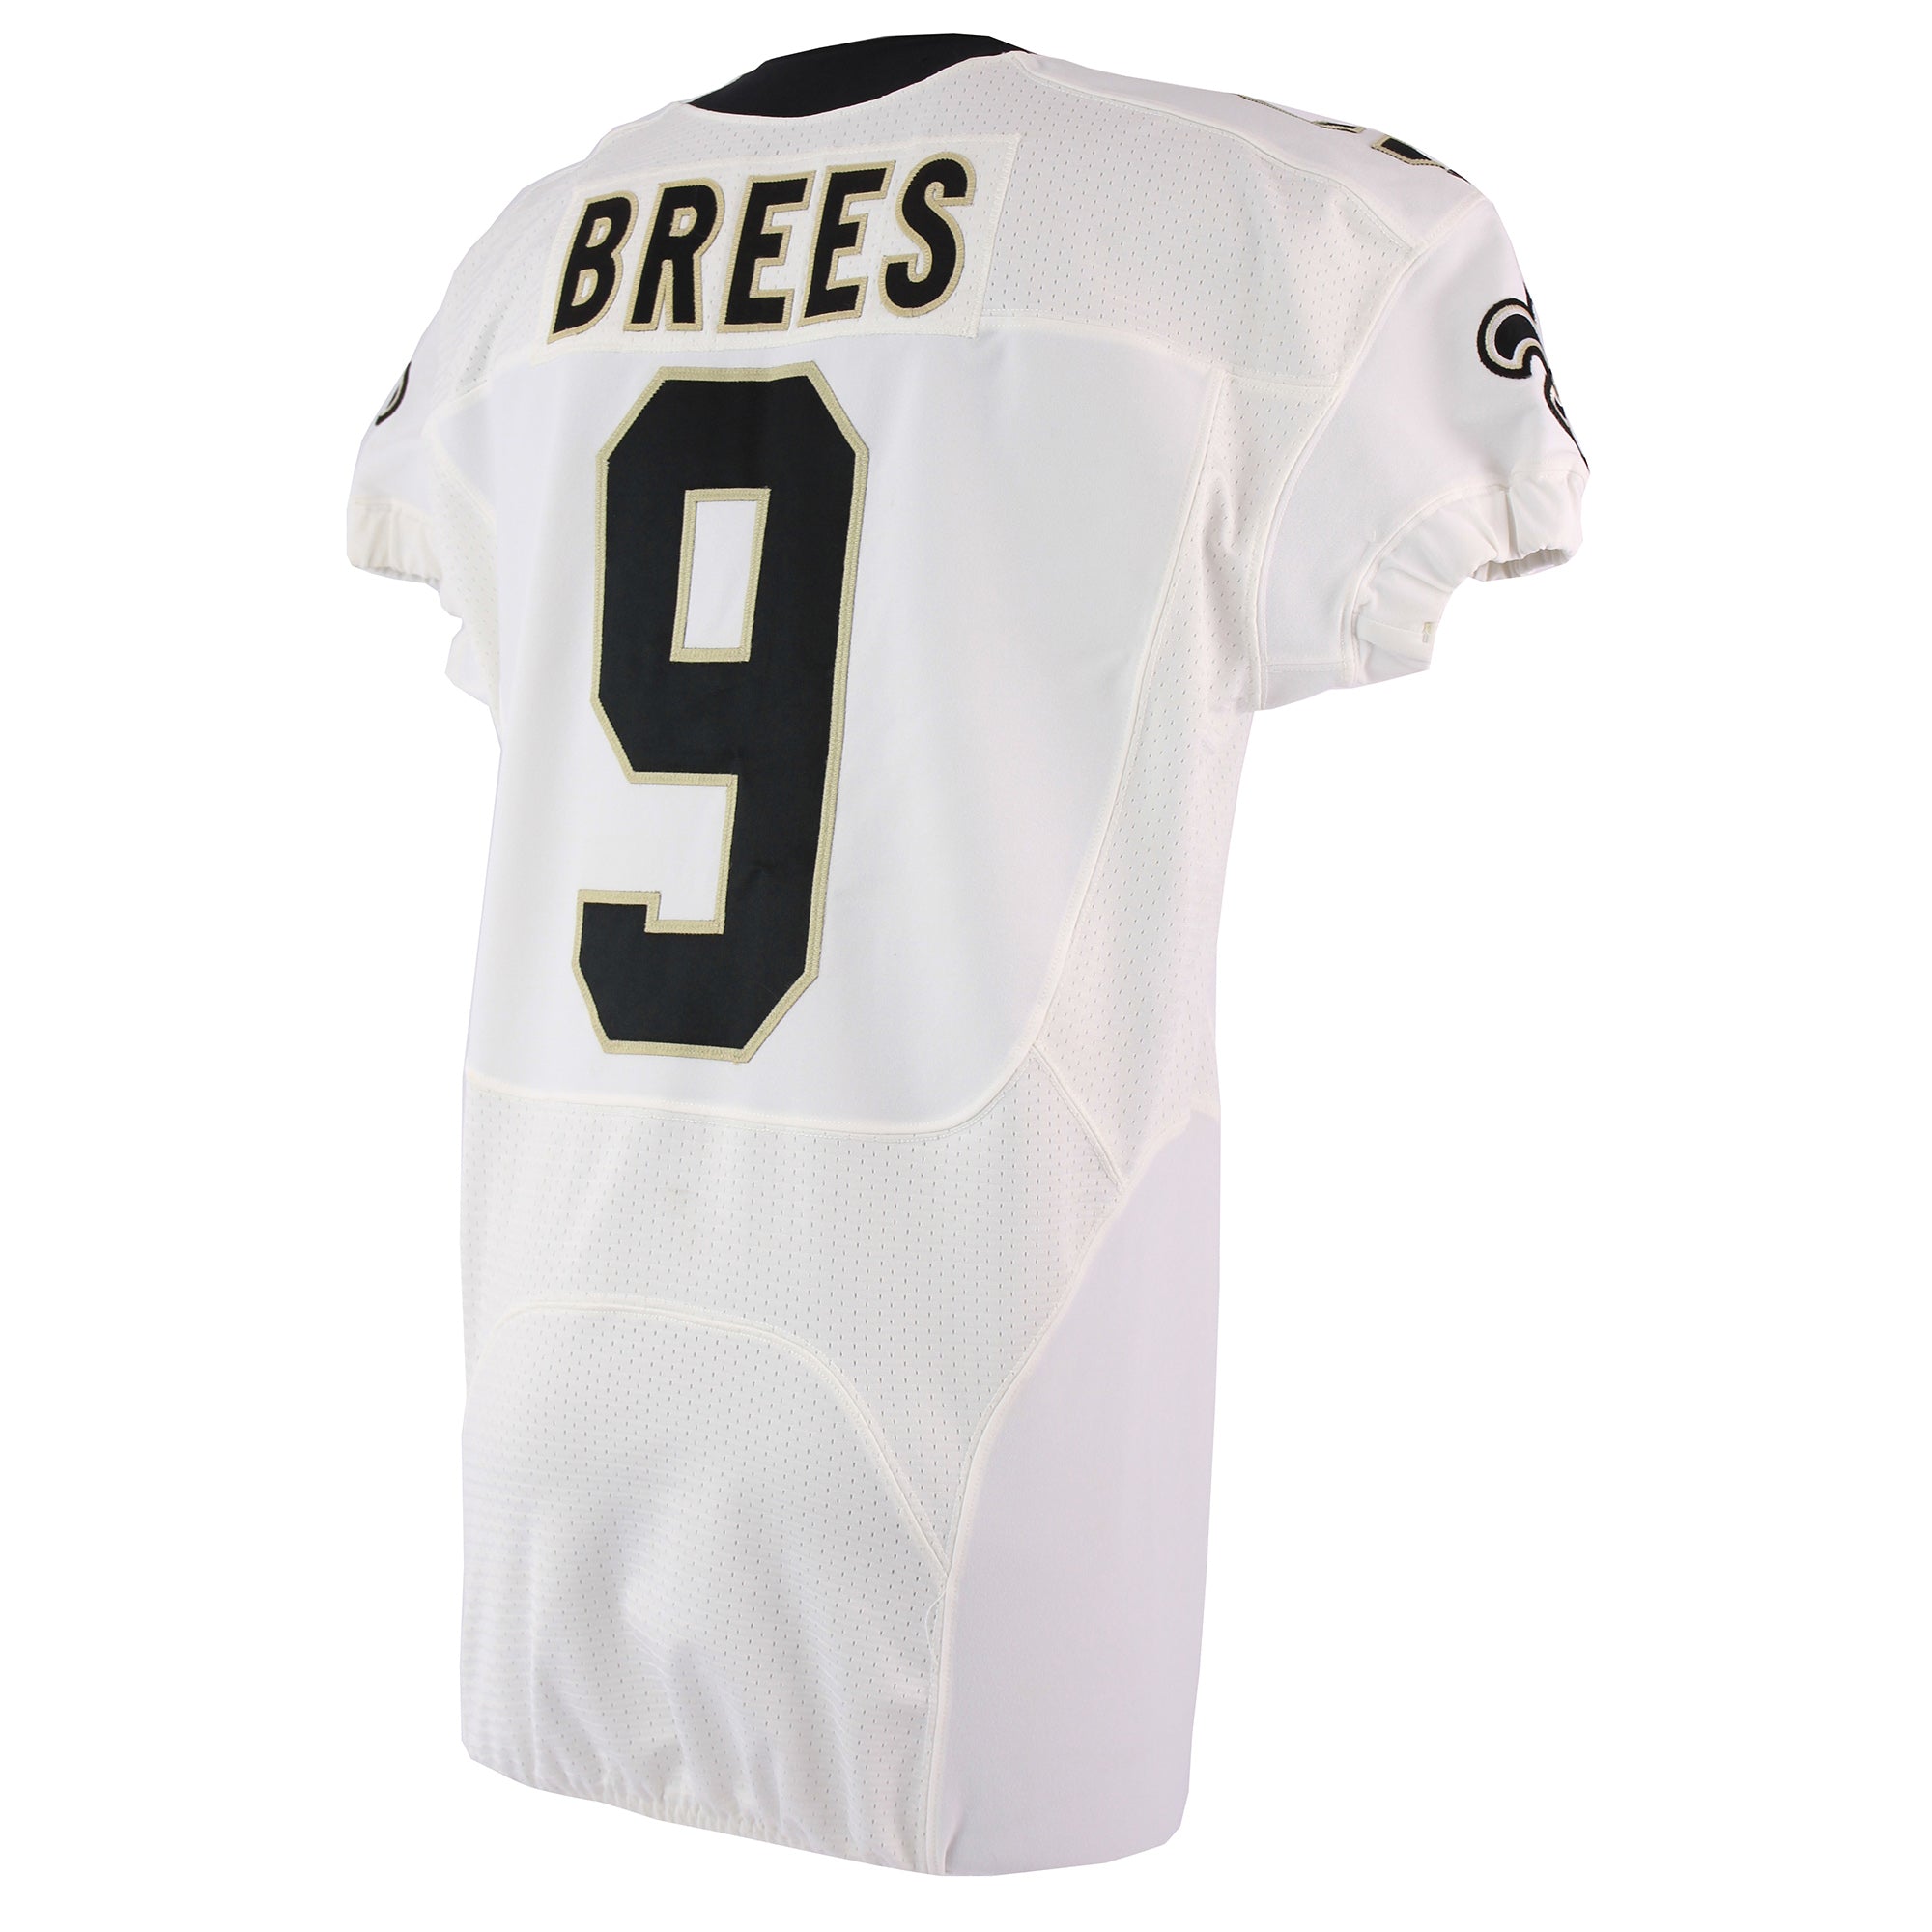 Drew Brees 2013 Game Worn Jersey